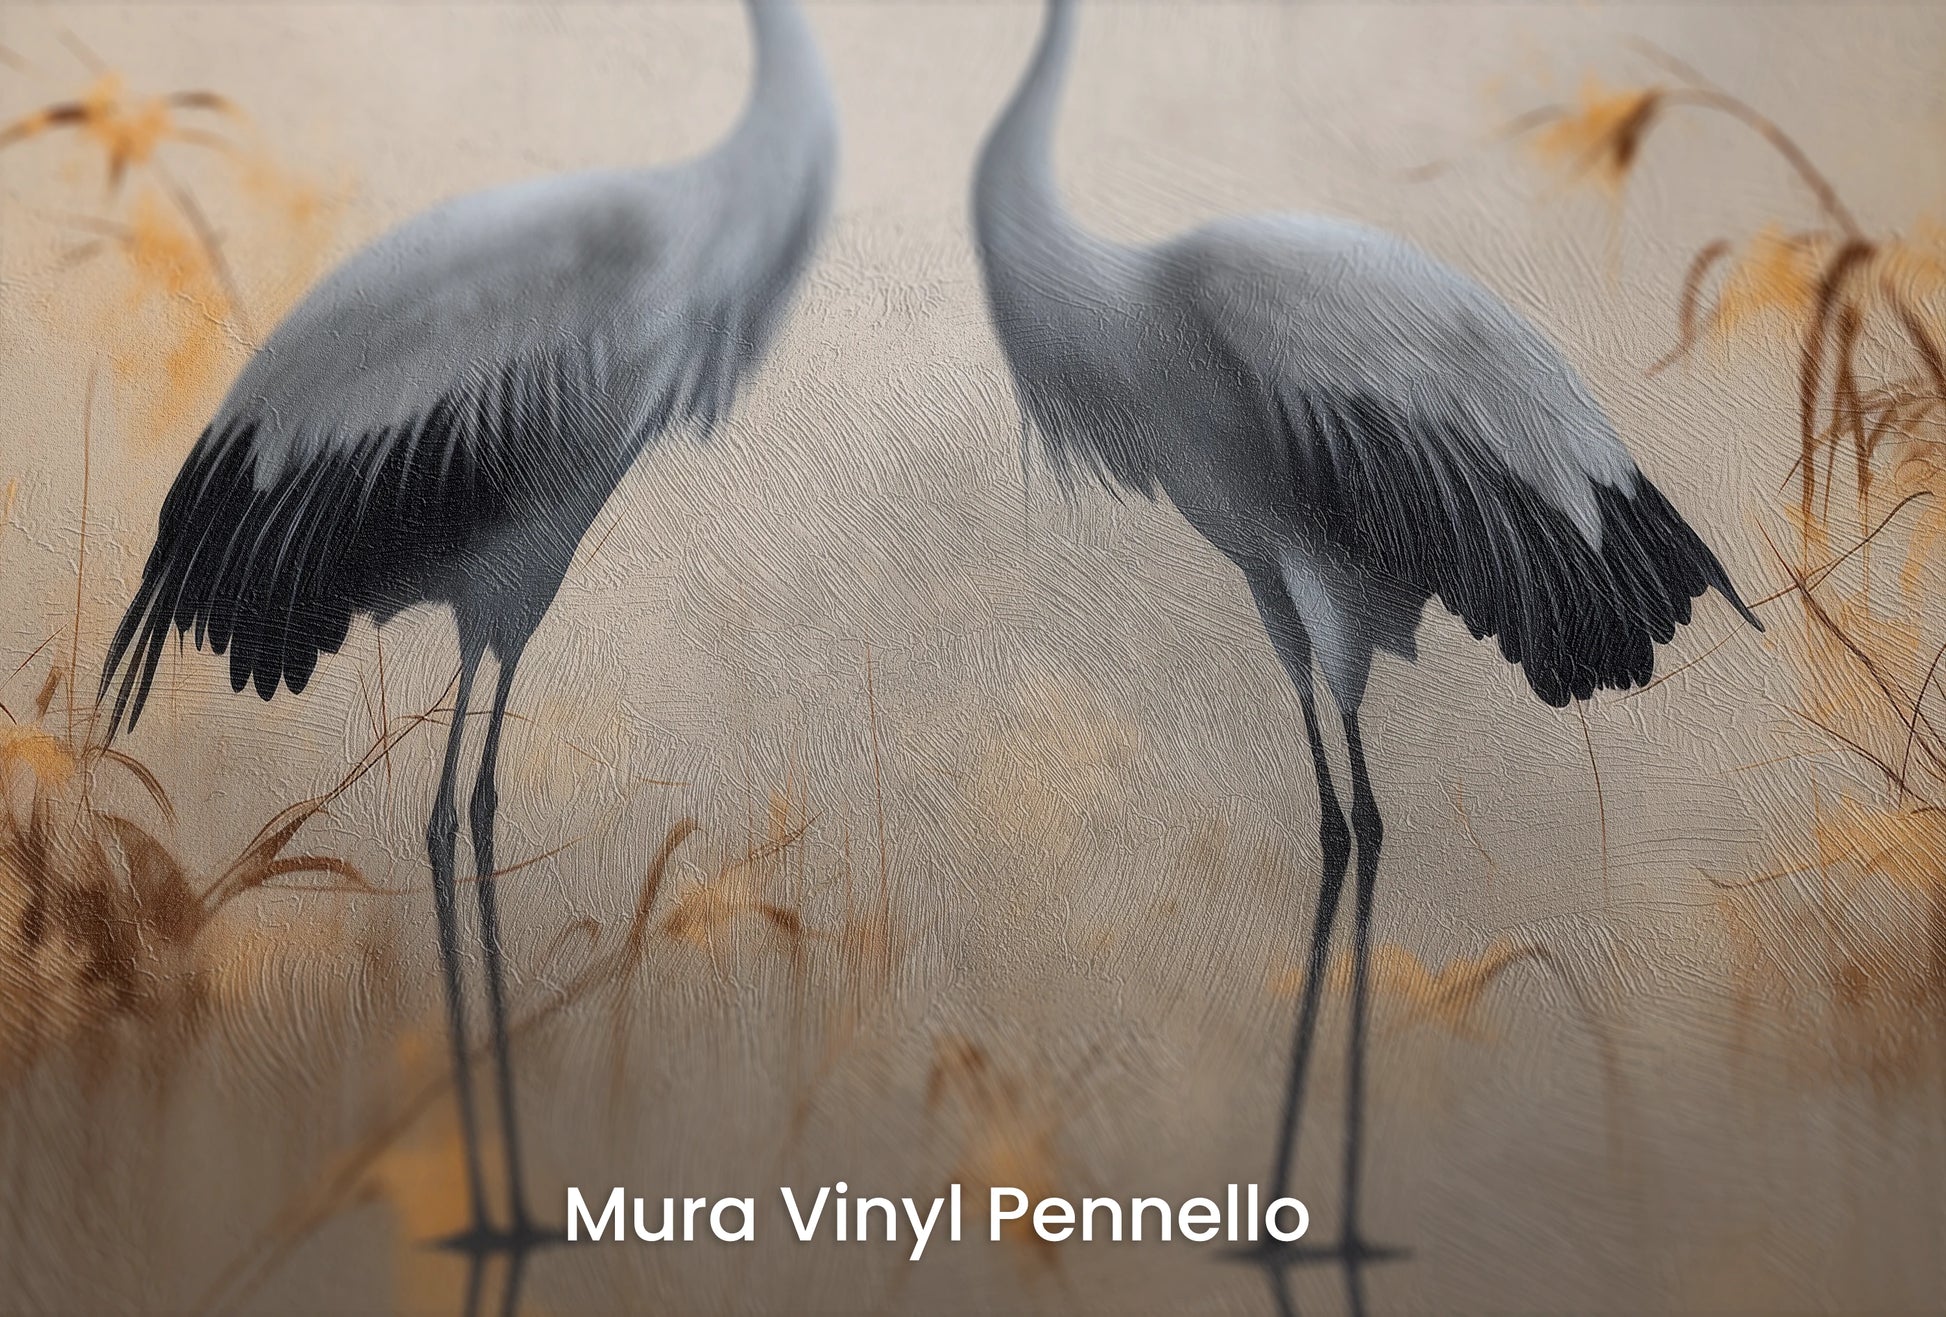 Zbliżenie na artystyczną fototapetę o nazwie Misty Silhouettes na podłożu Mura Vinyl Pennello - faktura pociągnięć pędzla malarskiego.